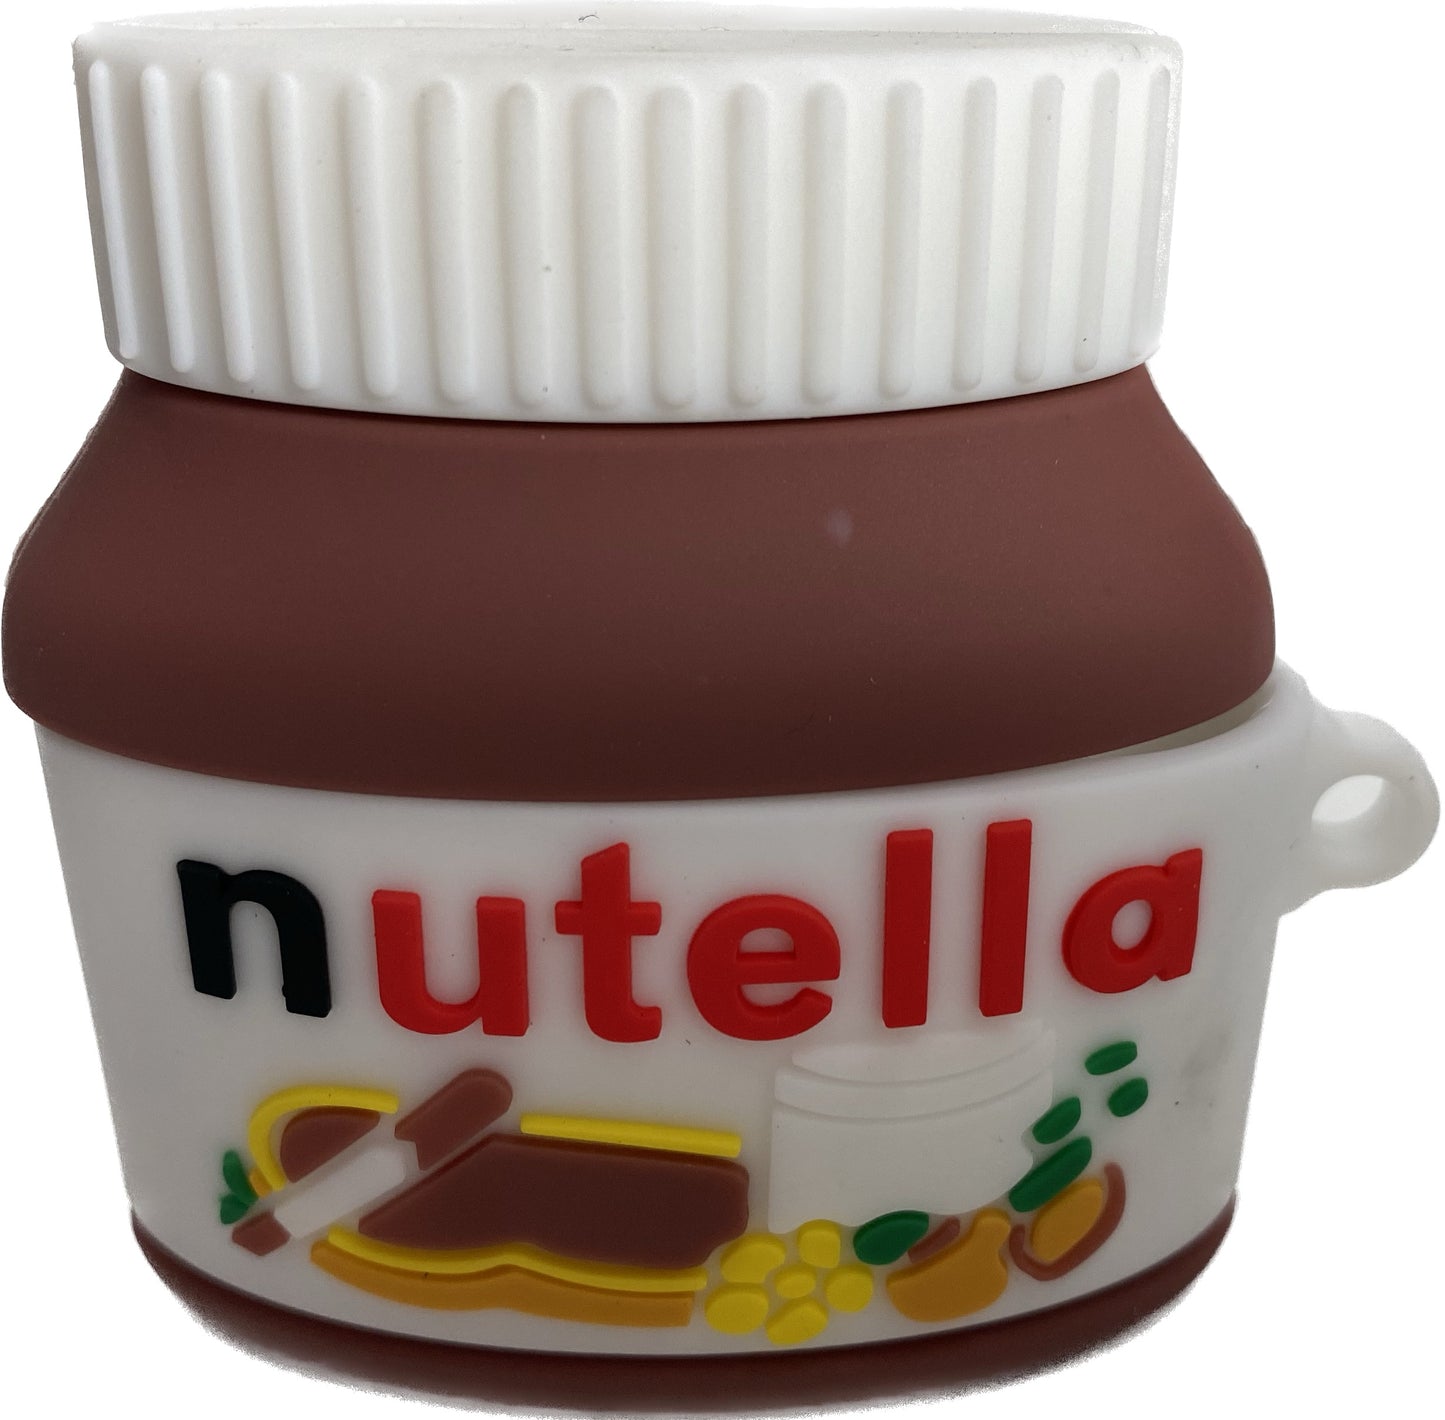 Nutella Airpod Pro Case